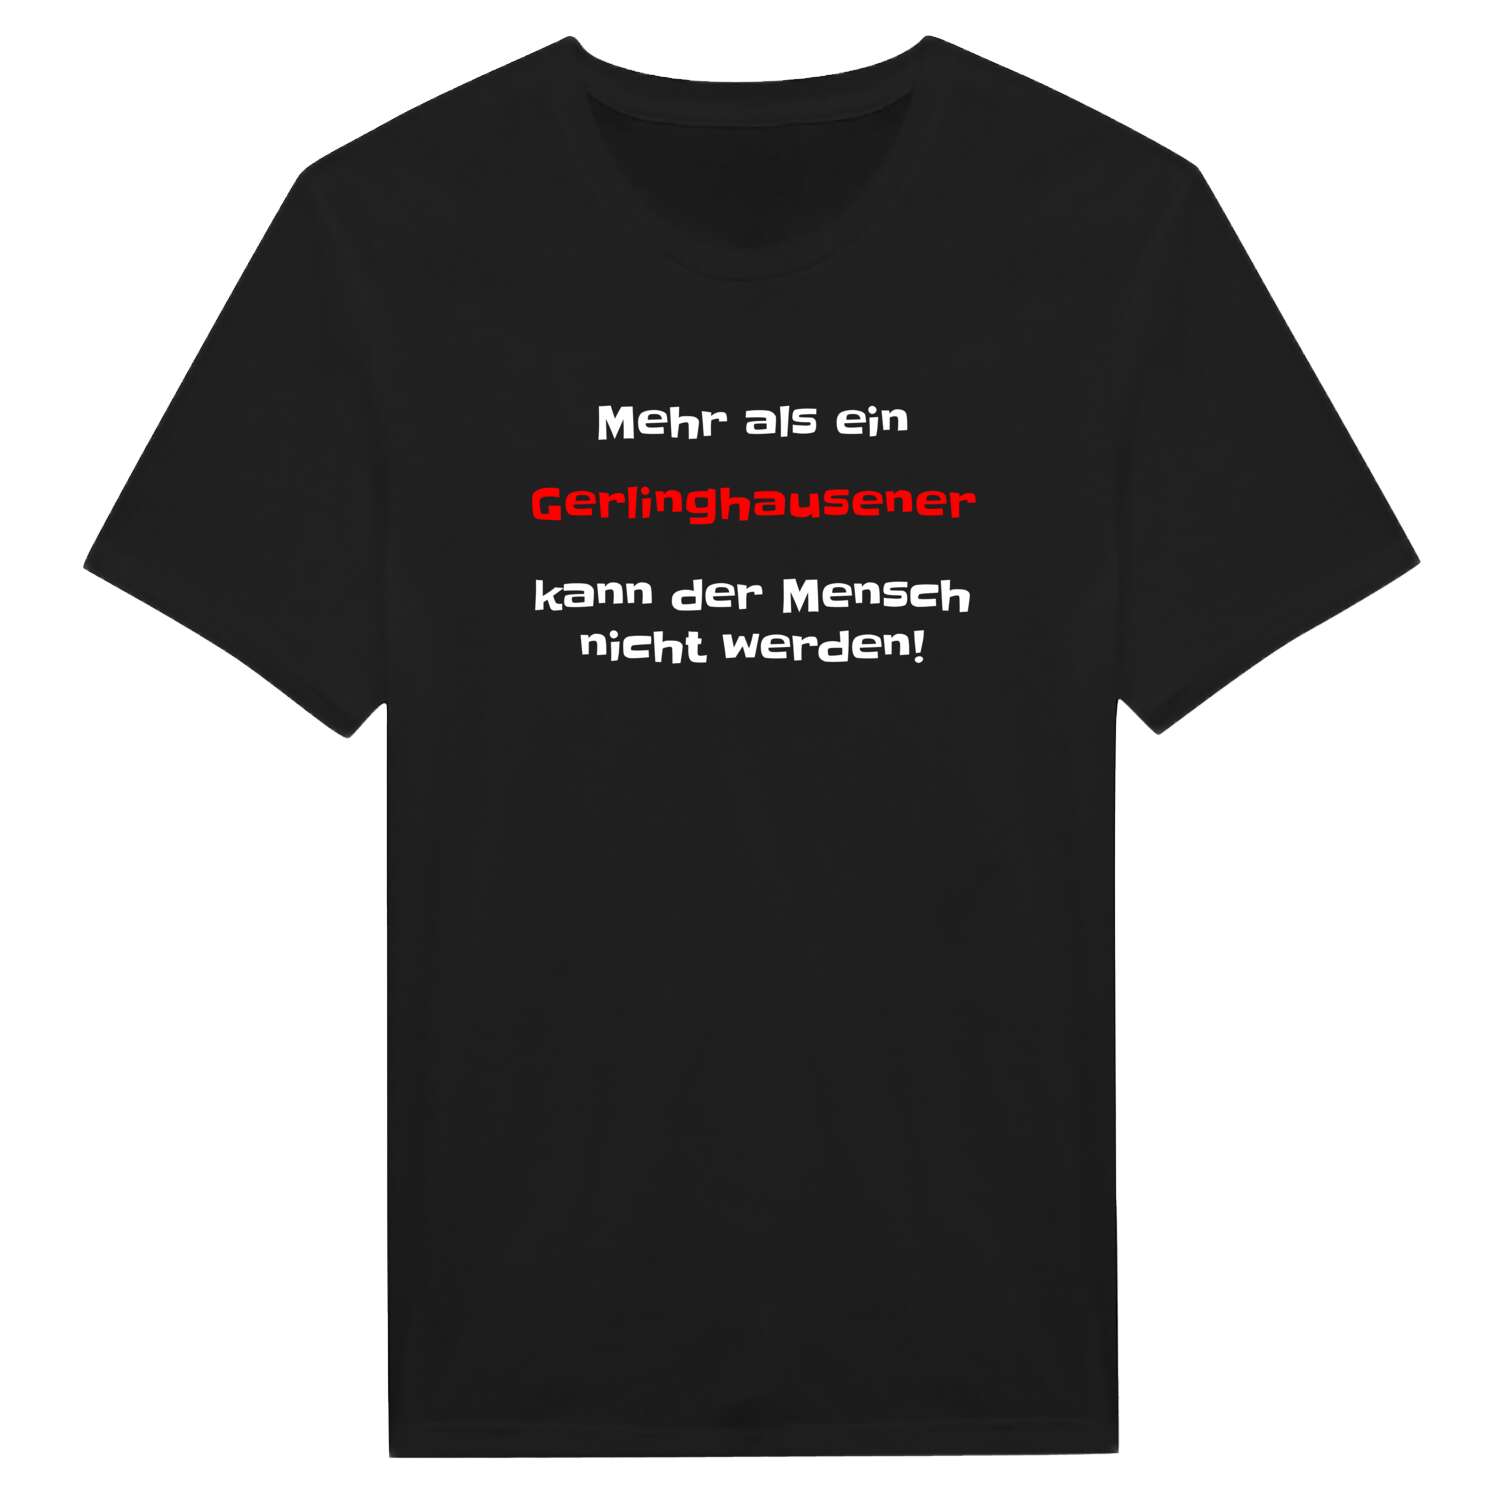 Gerlinghausen T-Shirt »Mehr als ein«